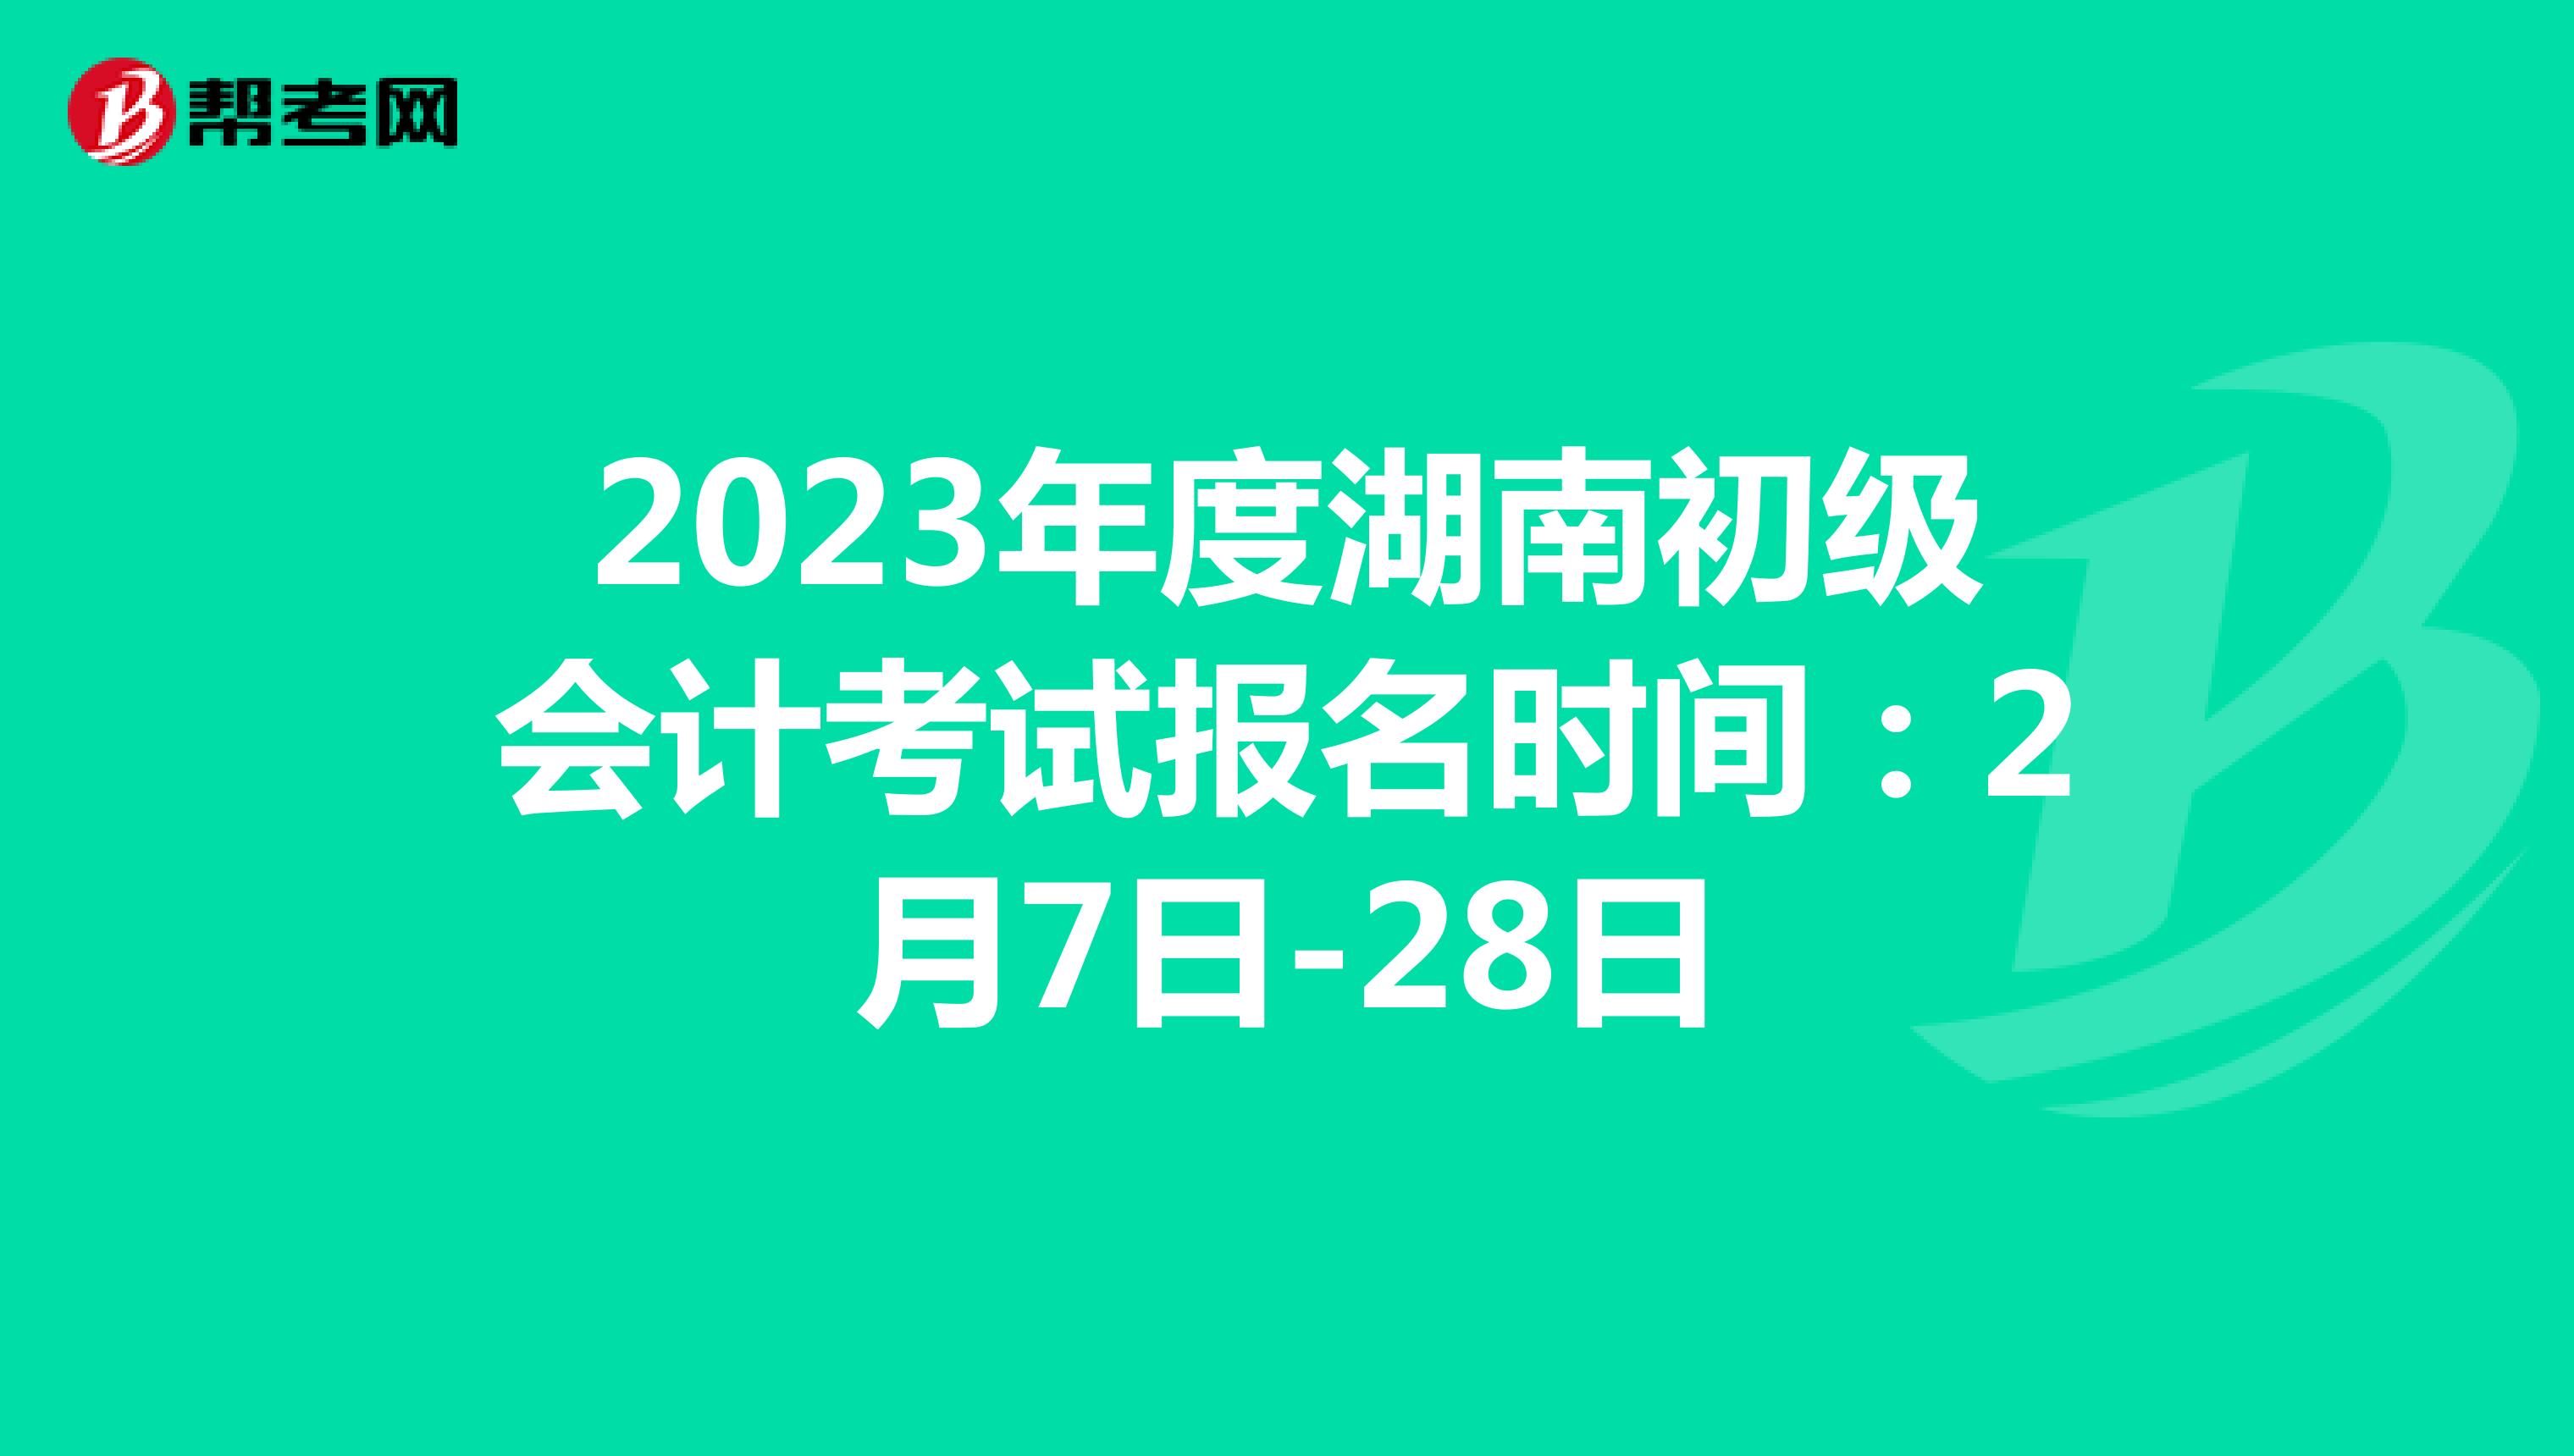 2023年度湖南初级会计考试报名时间：2月7日-28日